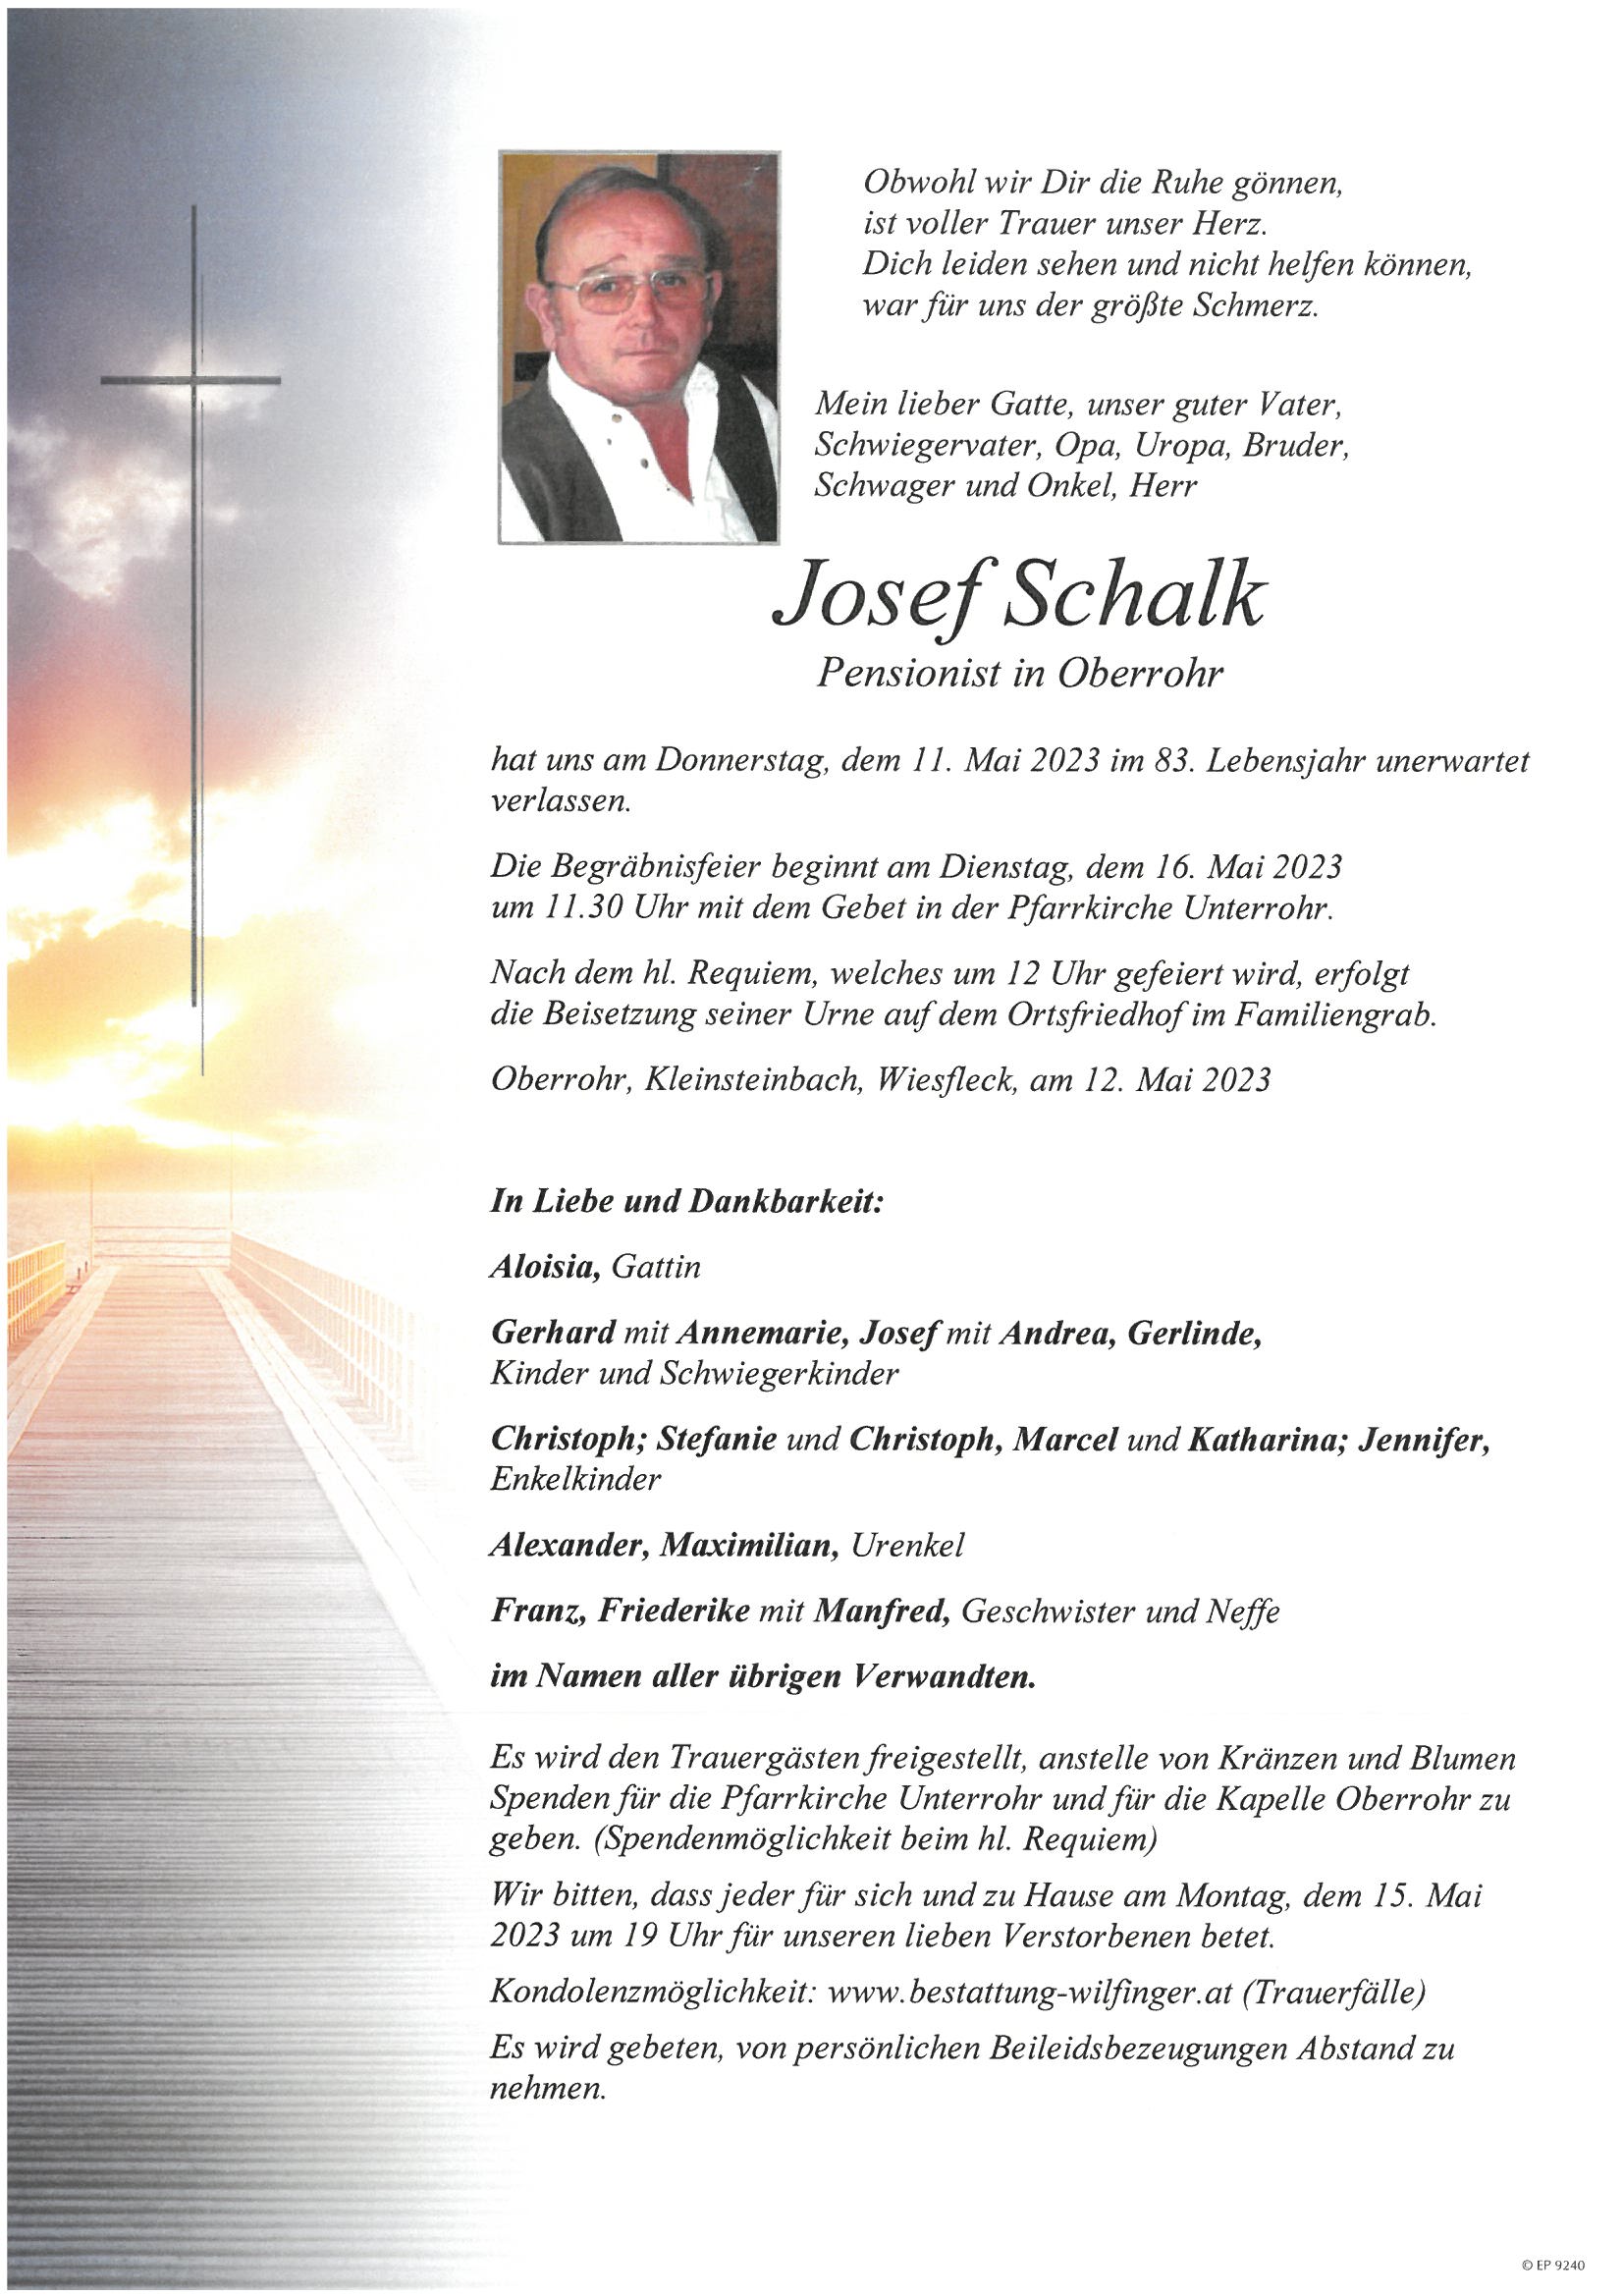 Josef Schalk, Oberrohr